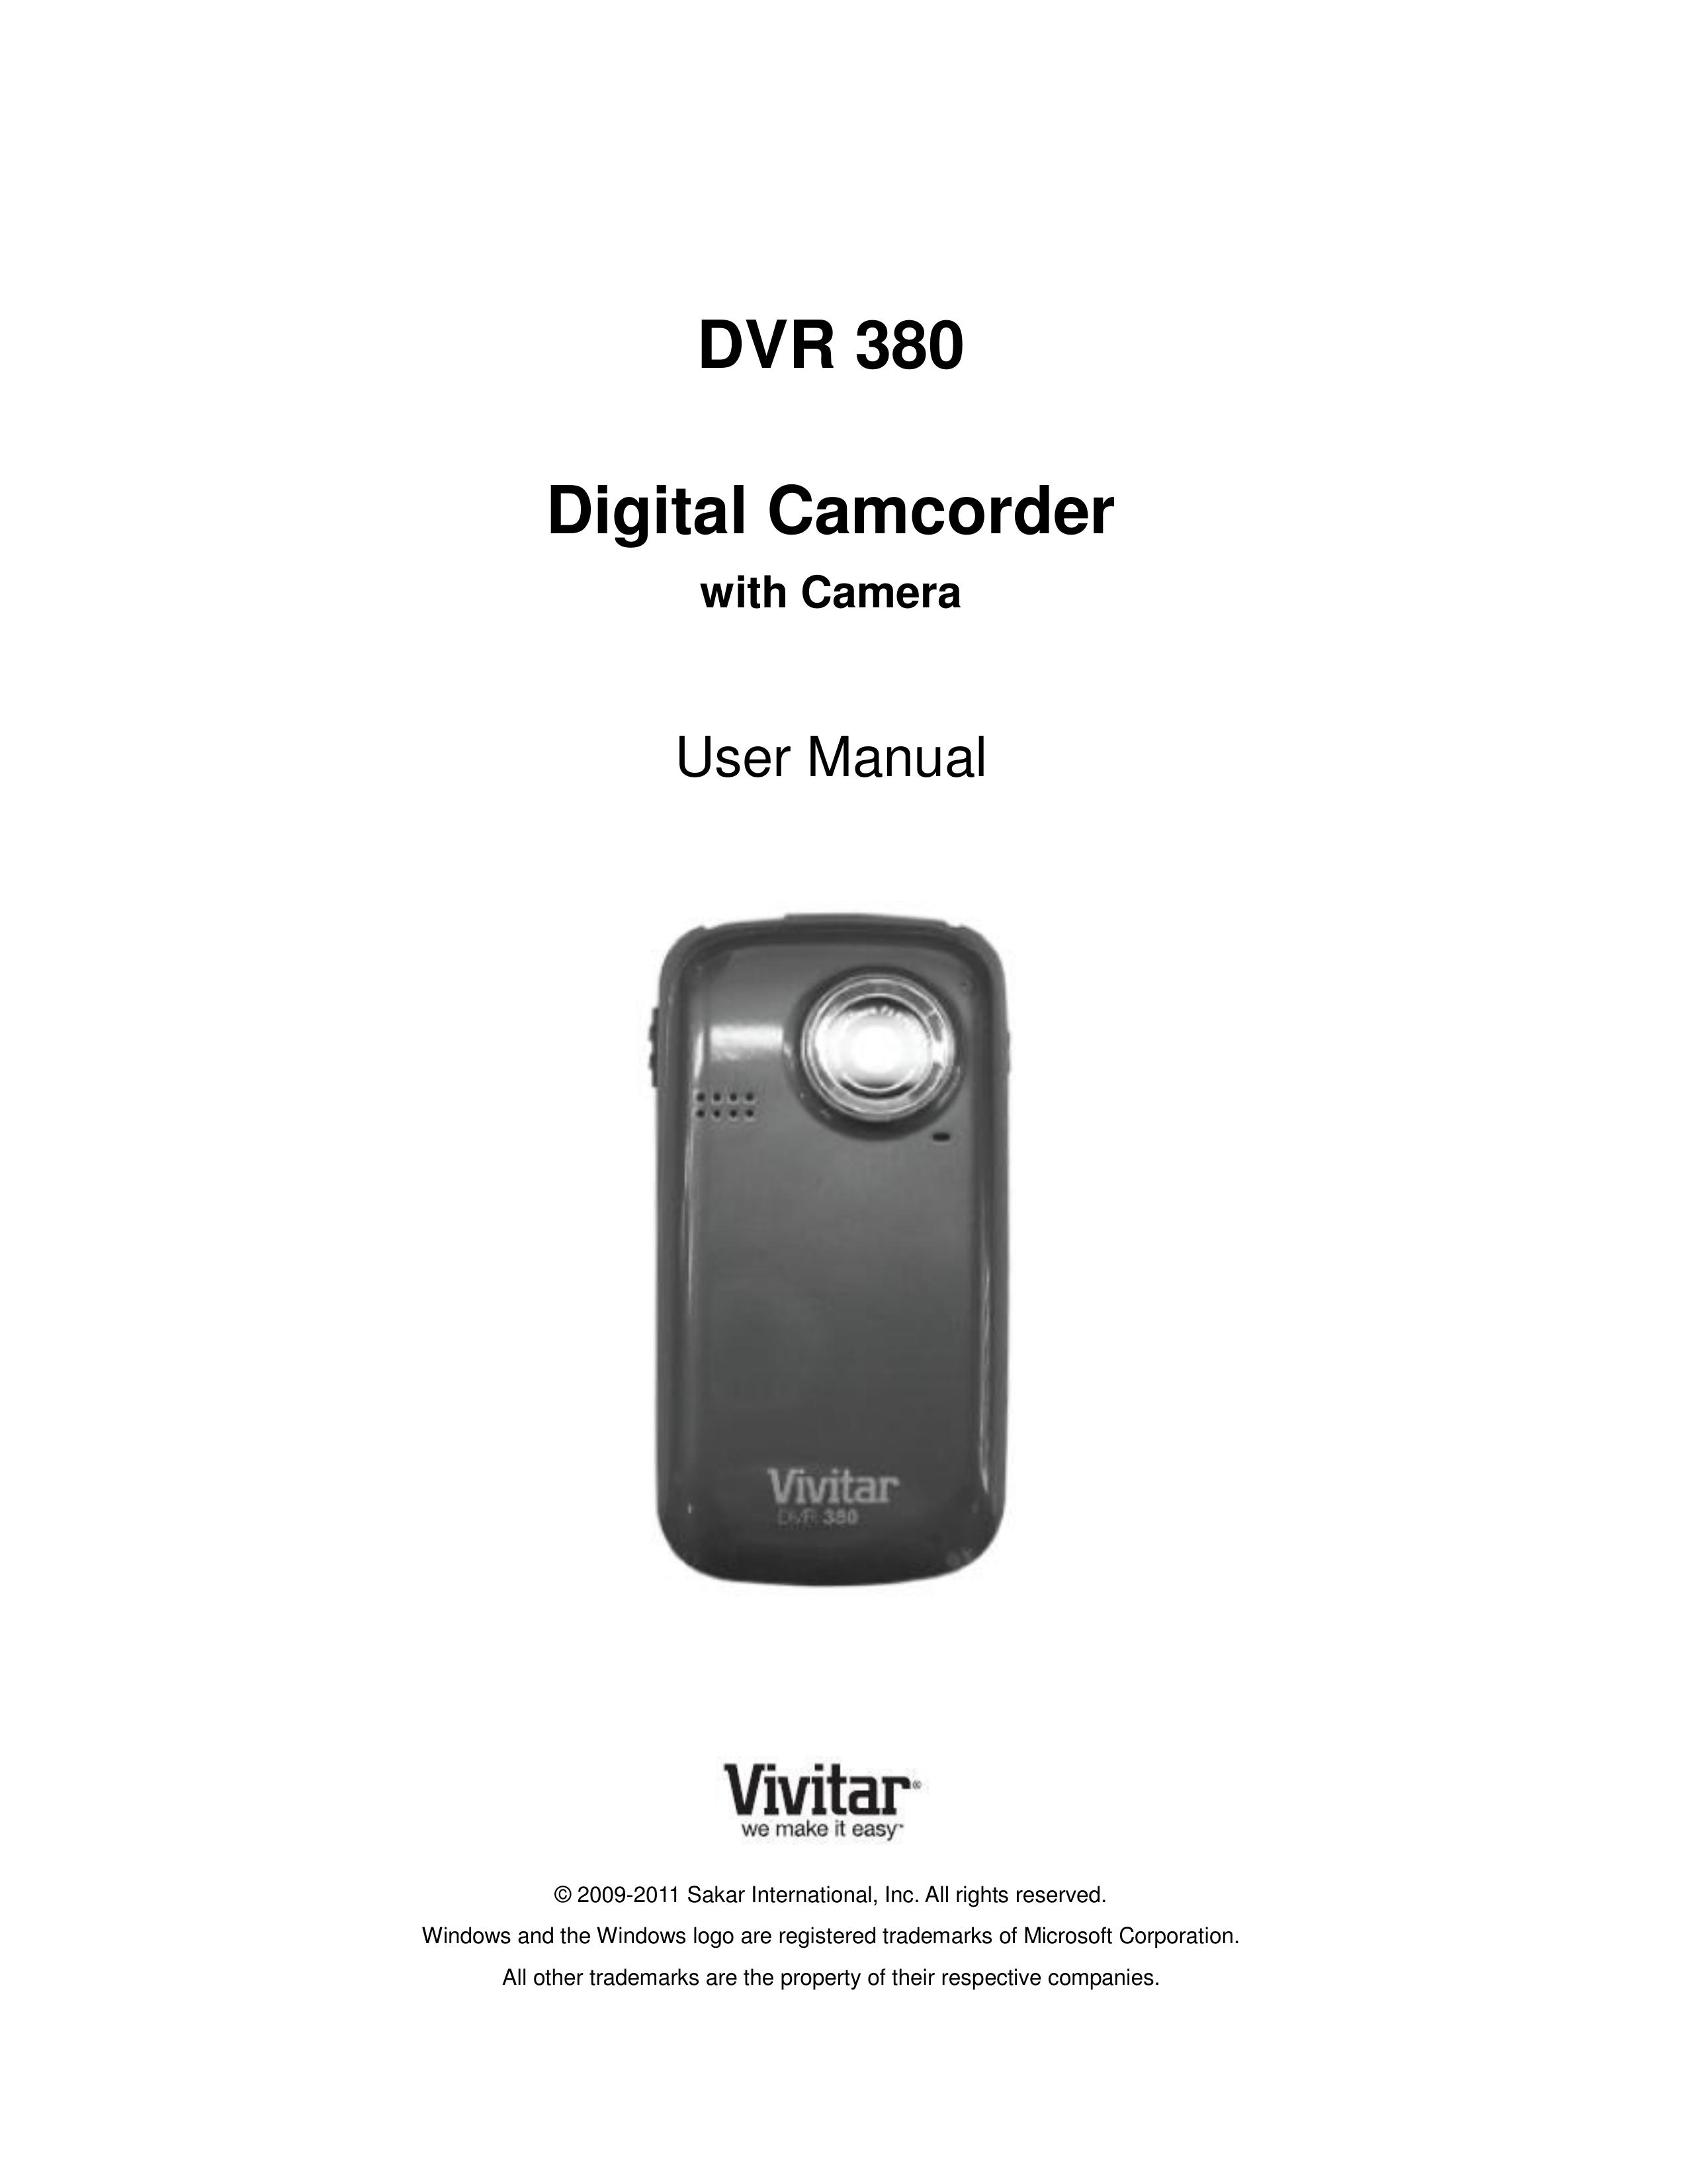 Vivitar DVR 380 Camcorder User Manual